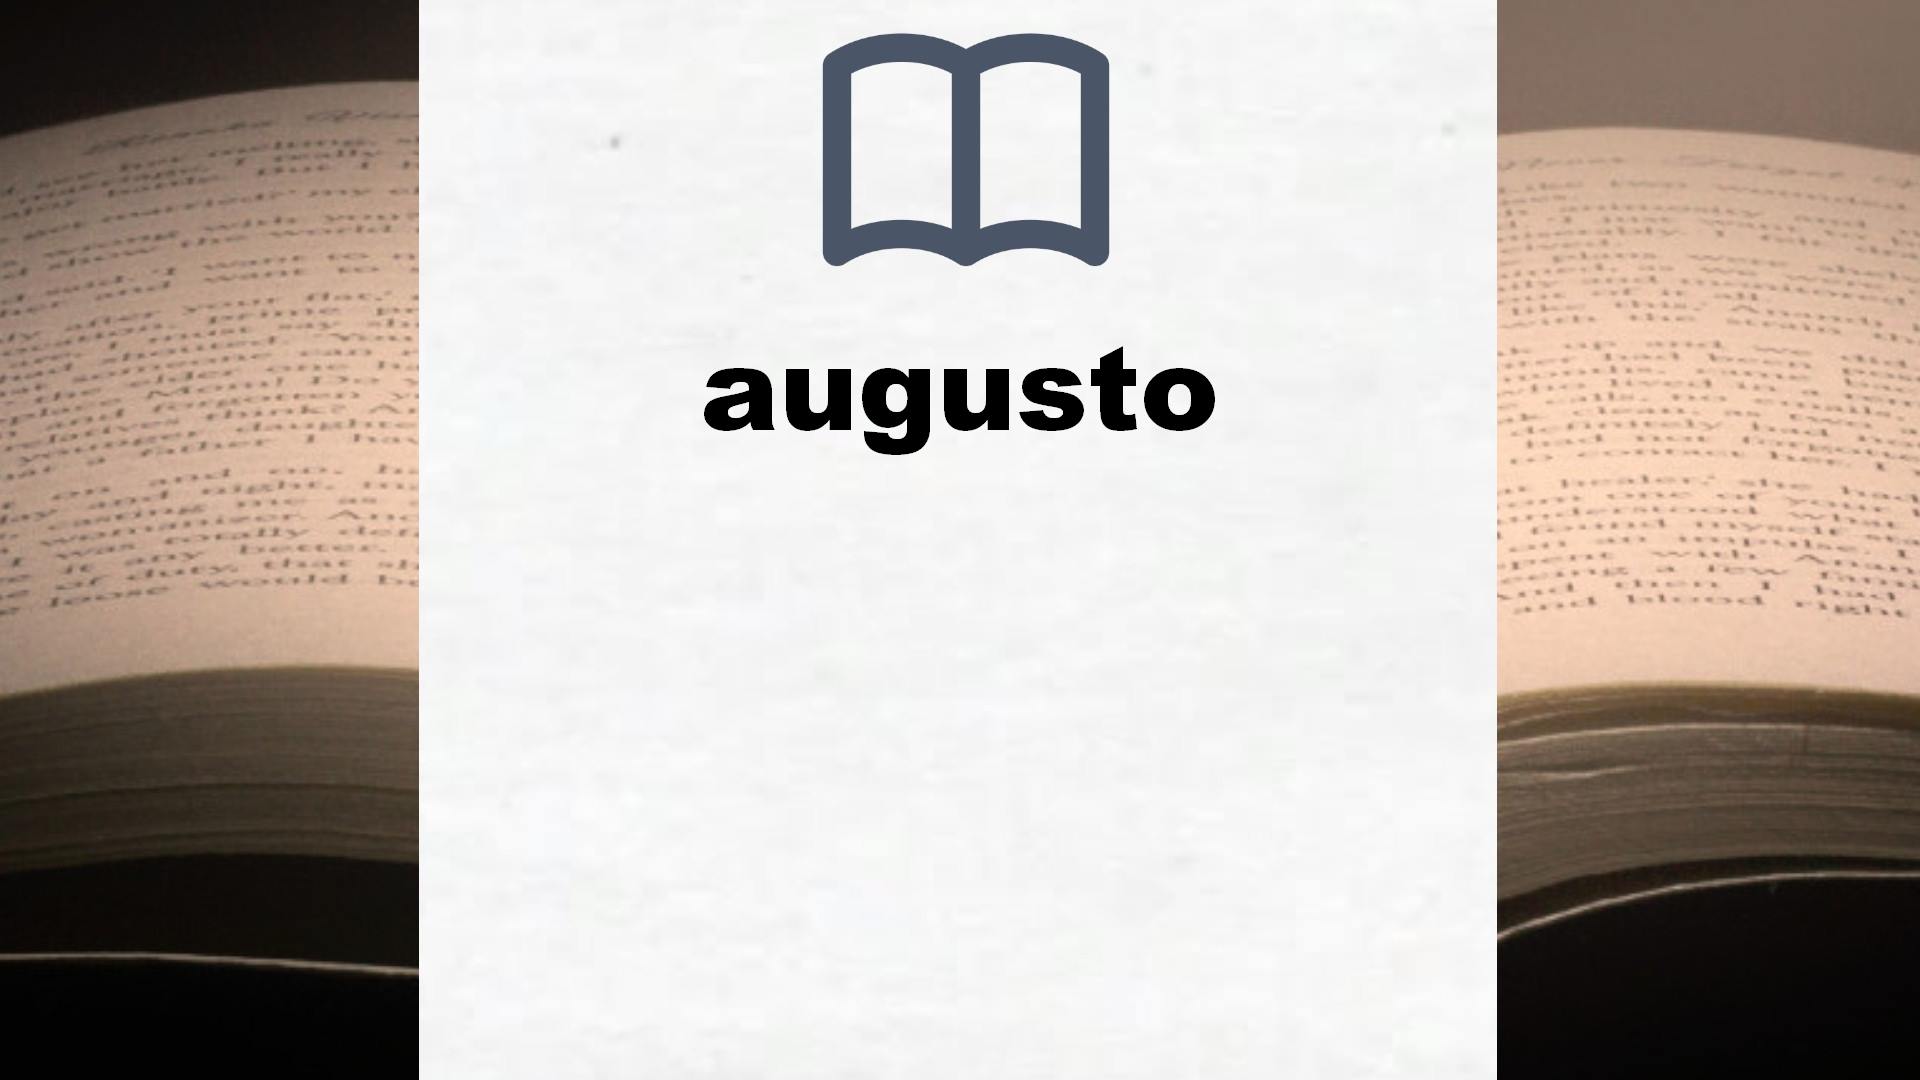 Libros sobre augusto